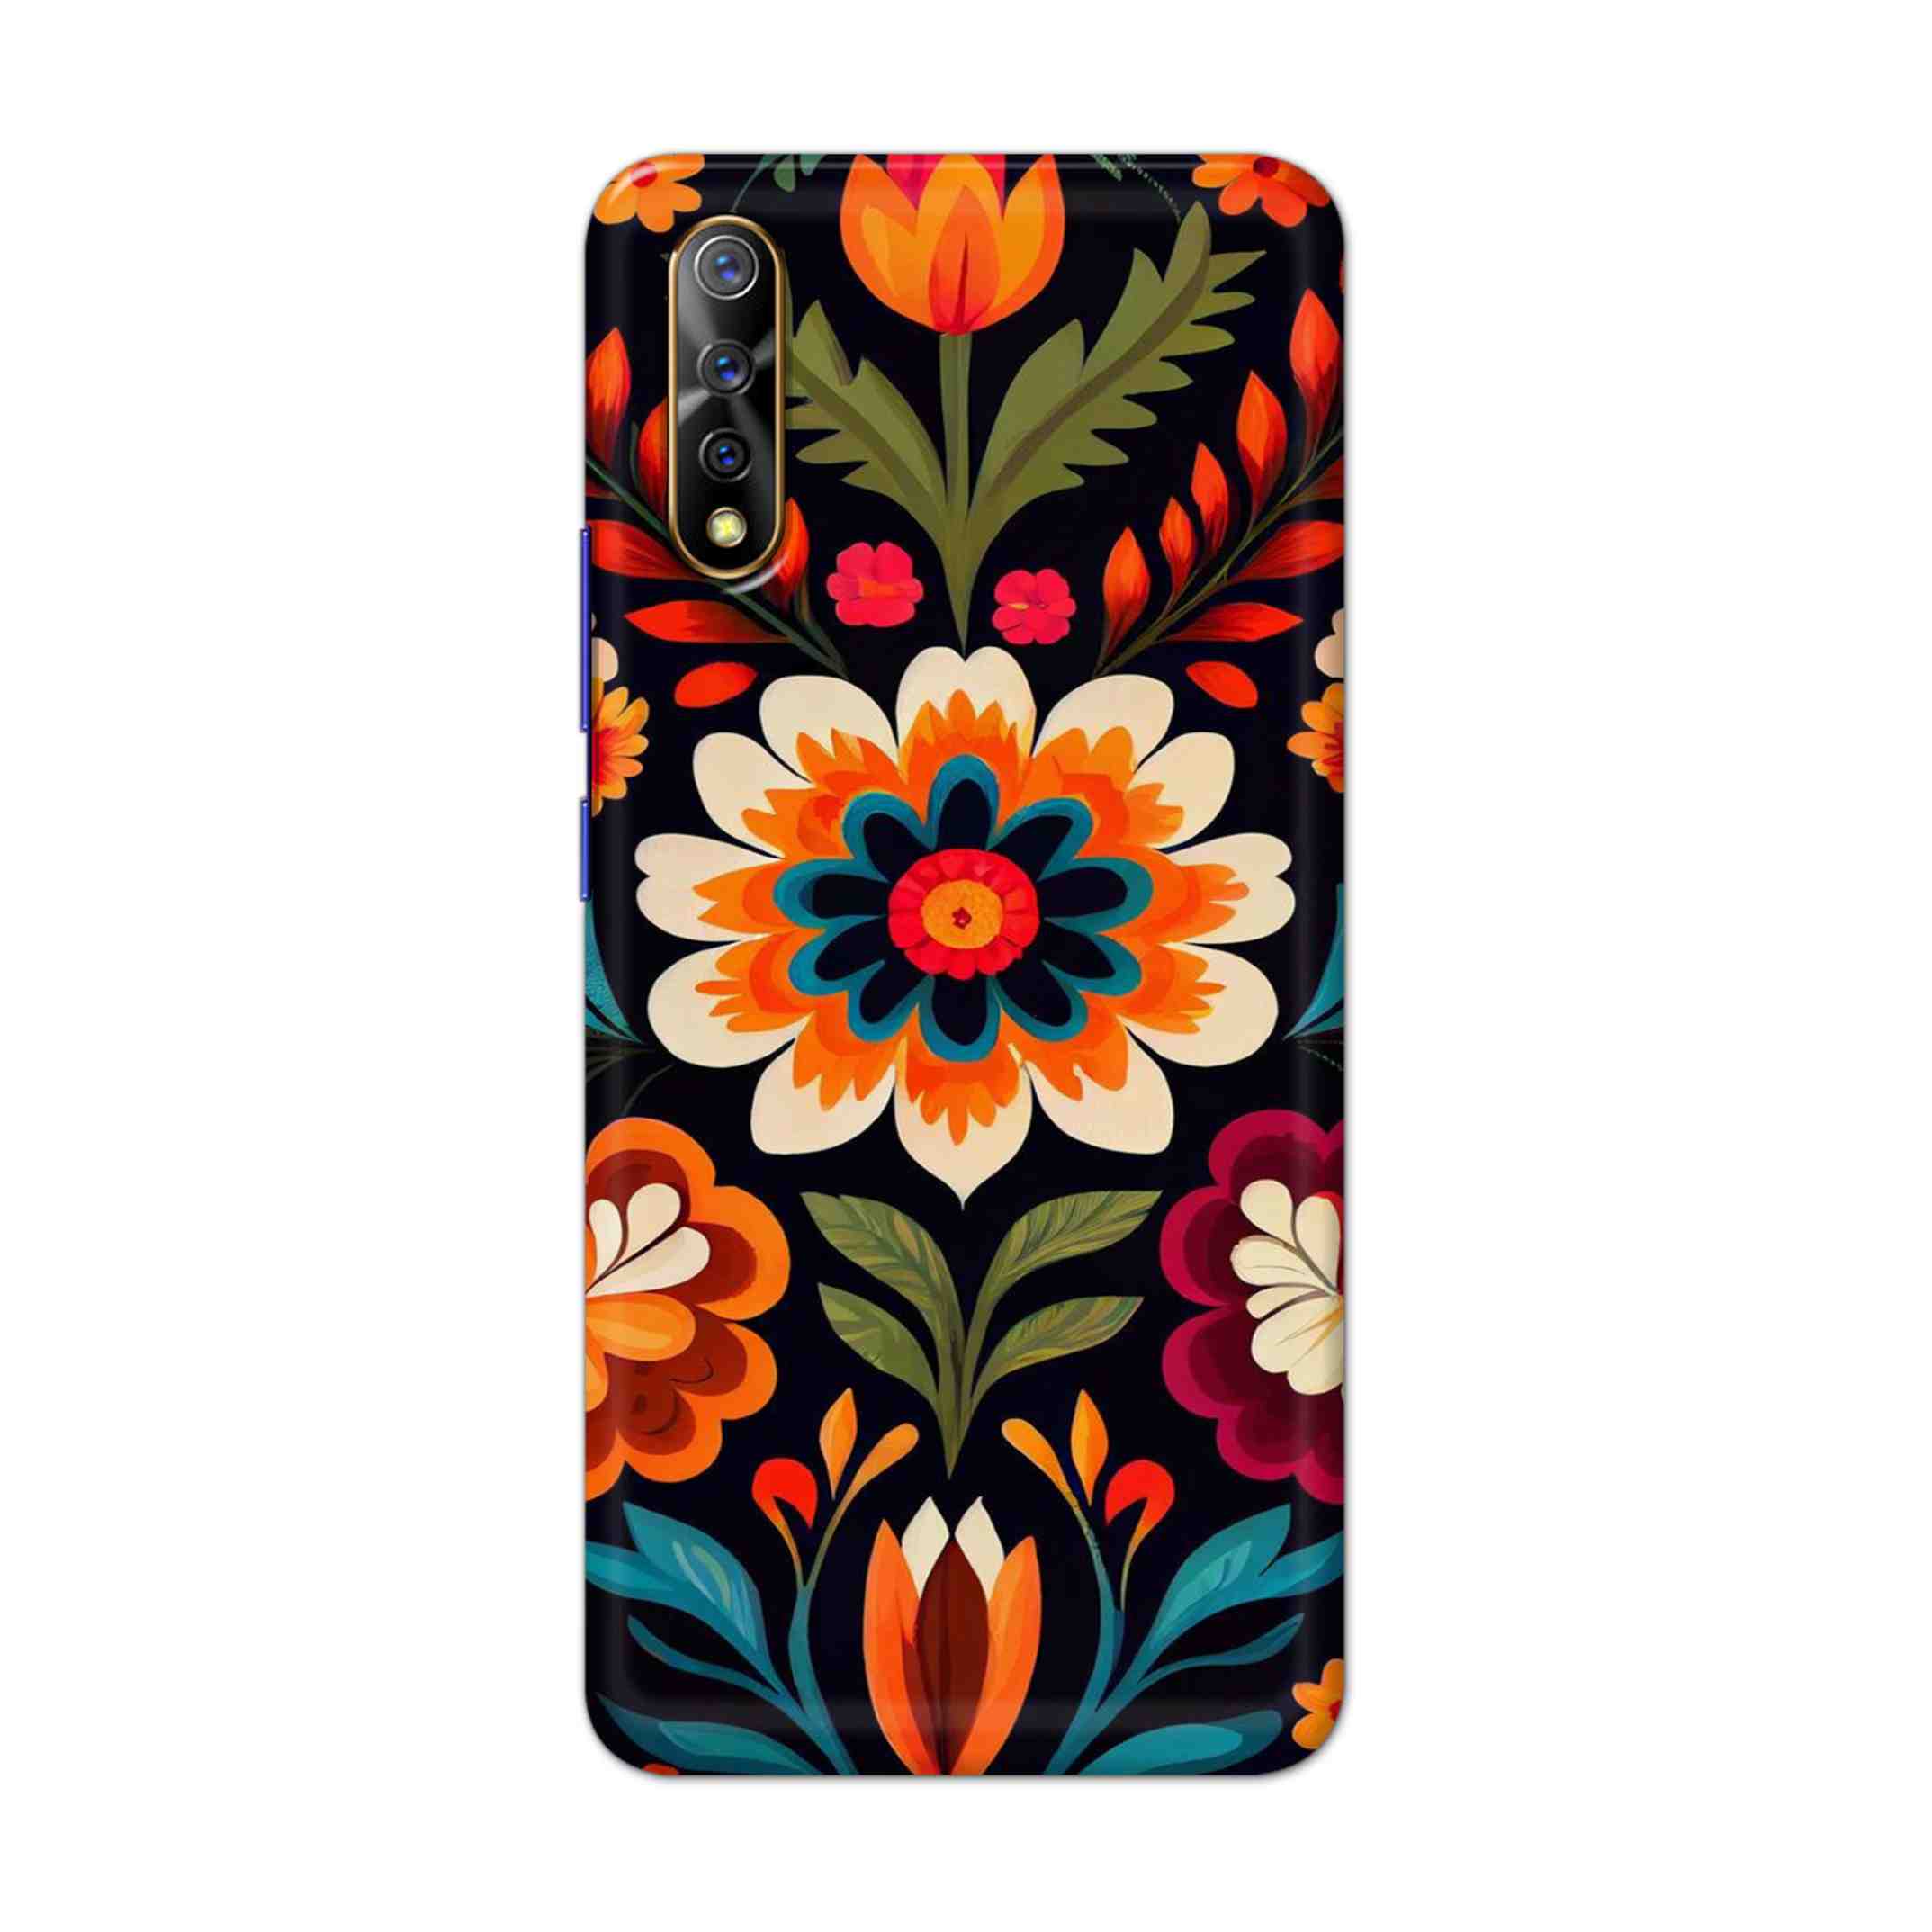 Buy Flower Hard Back Mobile Phone Case Cover For Vivo S1 / Z1x Online